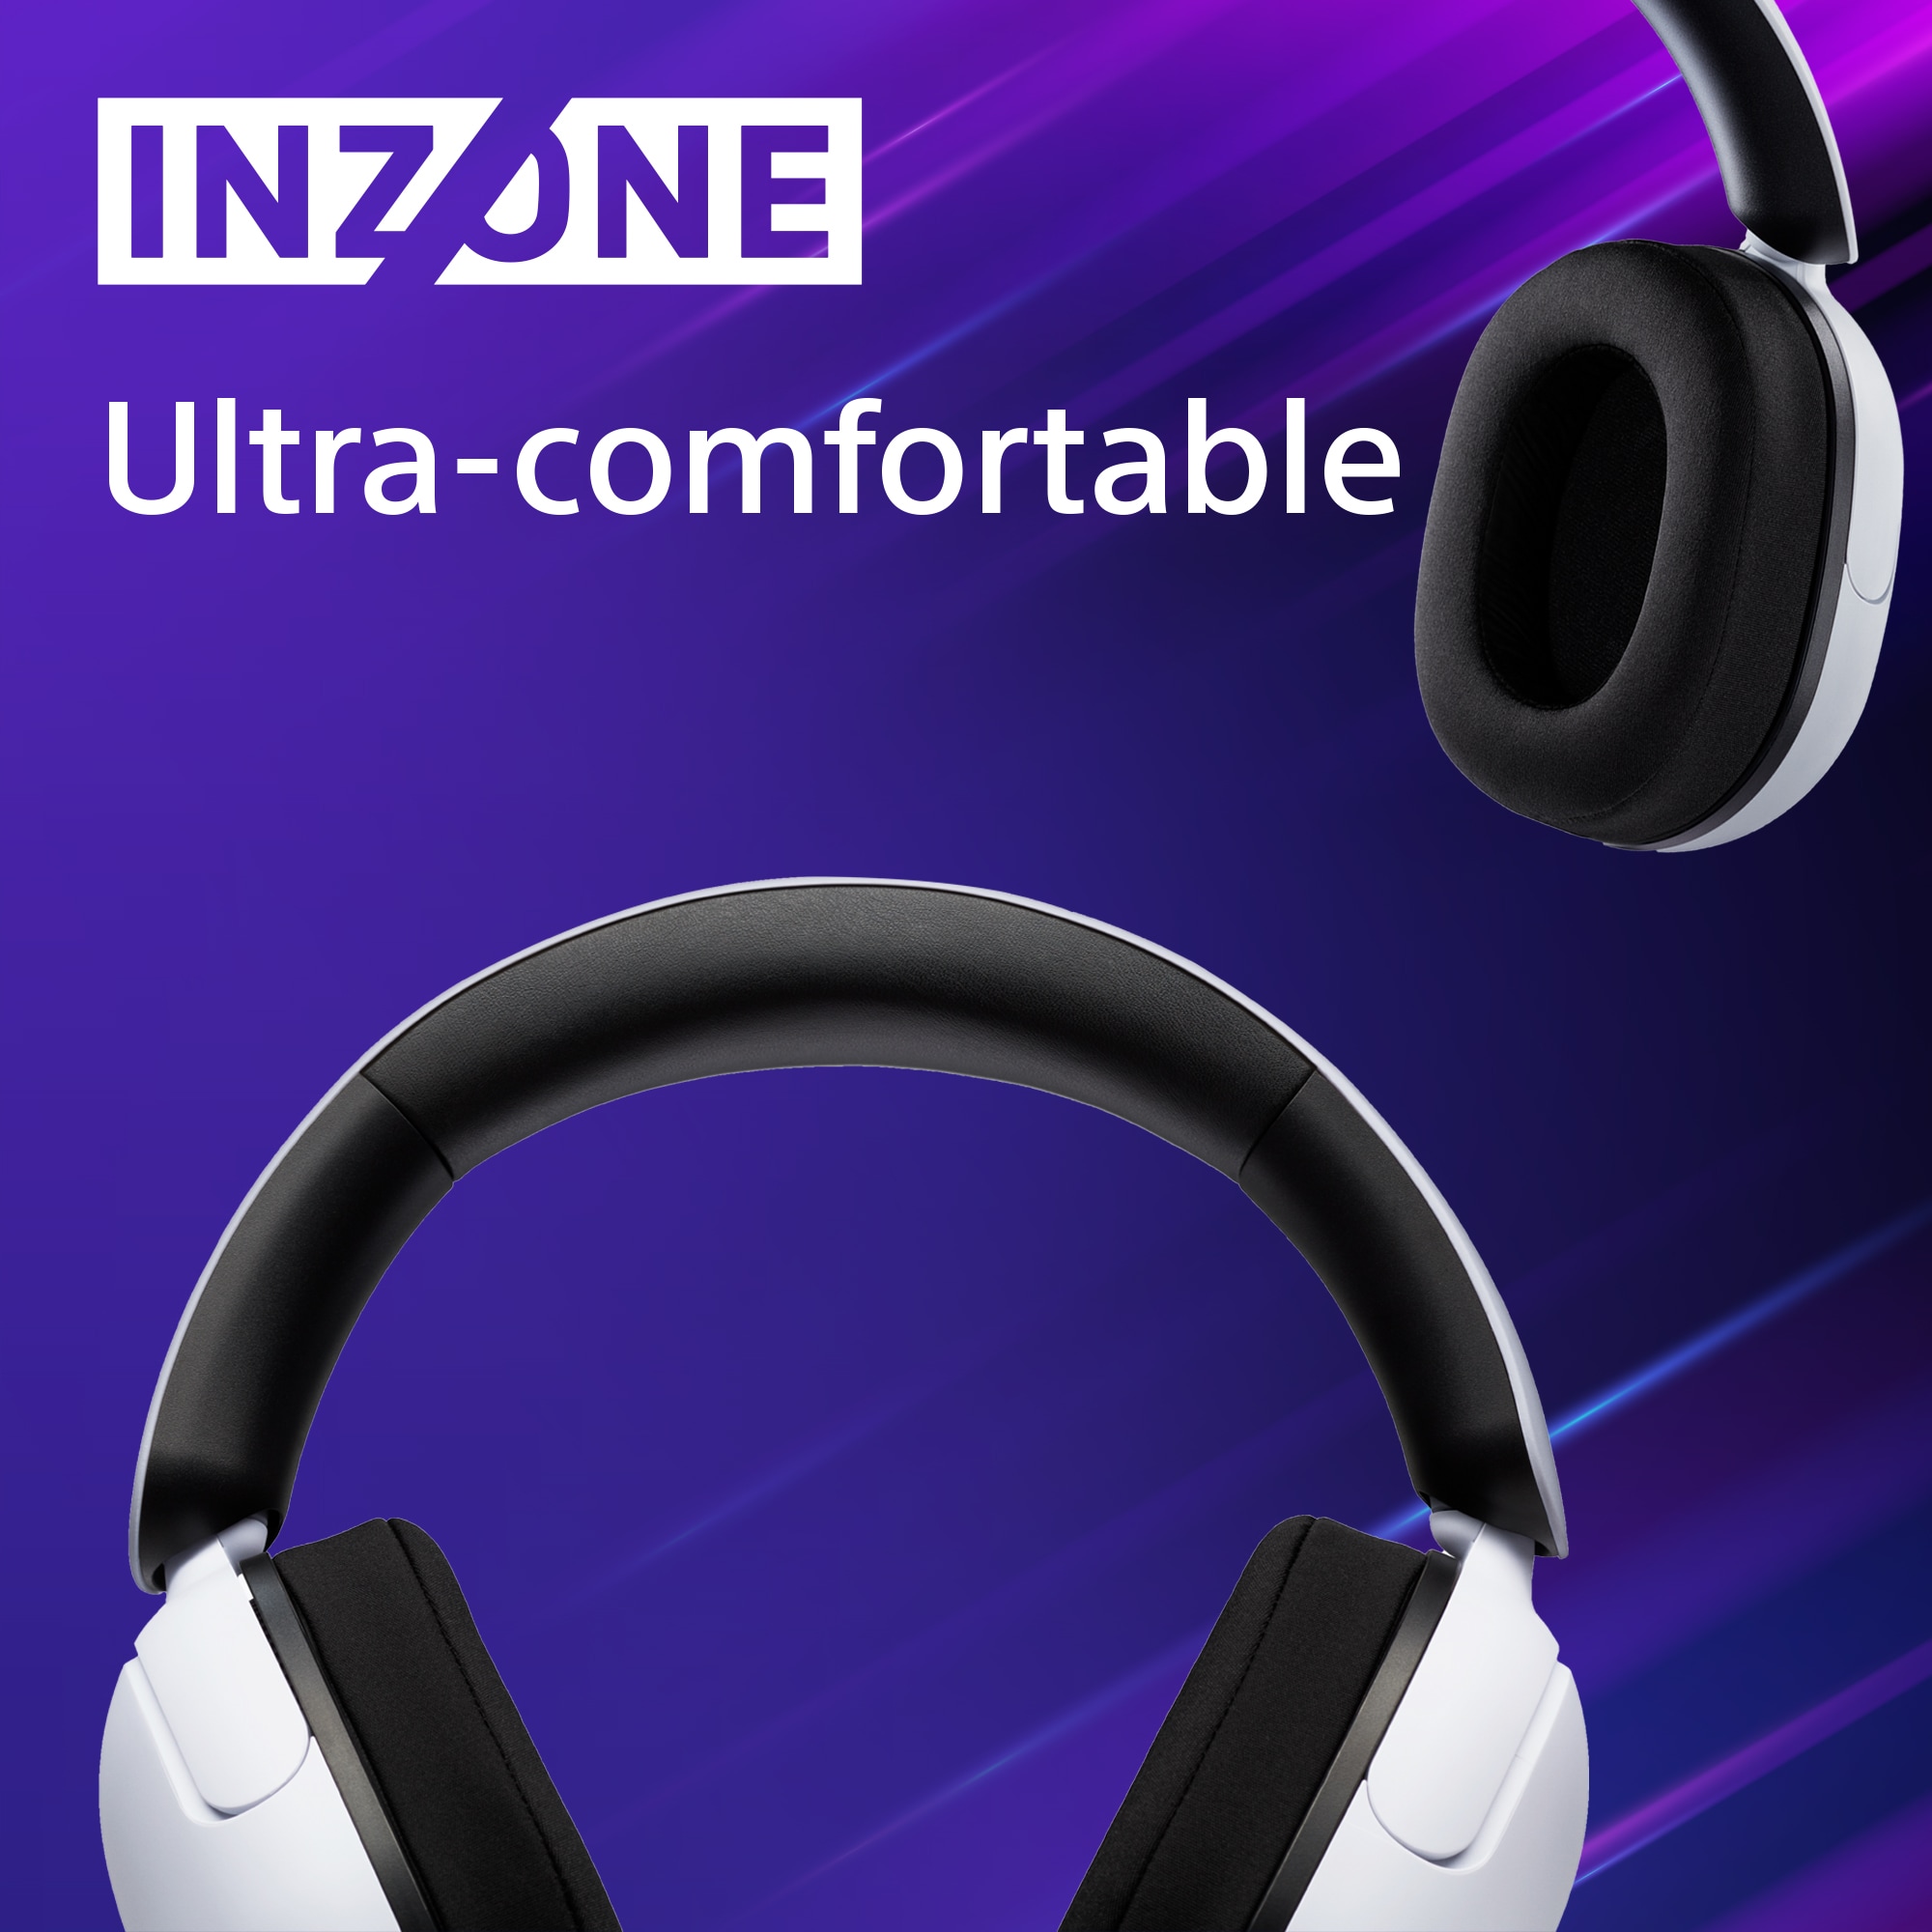 Sony Inzone hörlurar på lila bakgrund